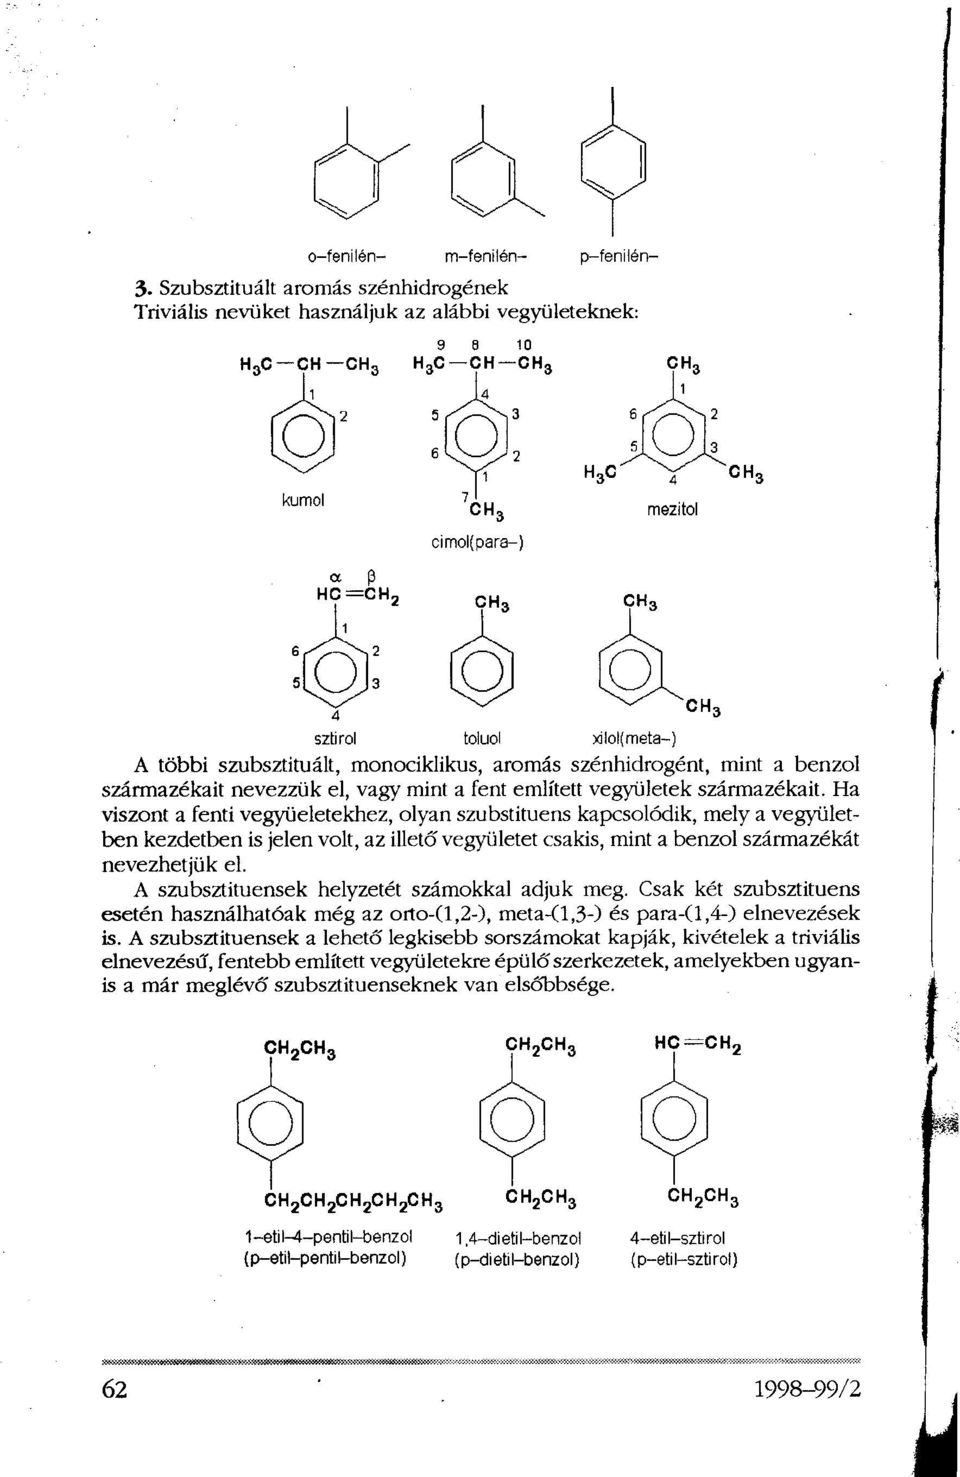 Ha viszont a fenti vegyületekhez, olyan szubstituens kapcsolódik, mely a vegyületben kezdetben is jelen volt, az illető vegyületet csakis, mint a benzol származékát nevezhetjük el.